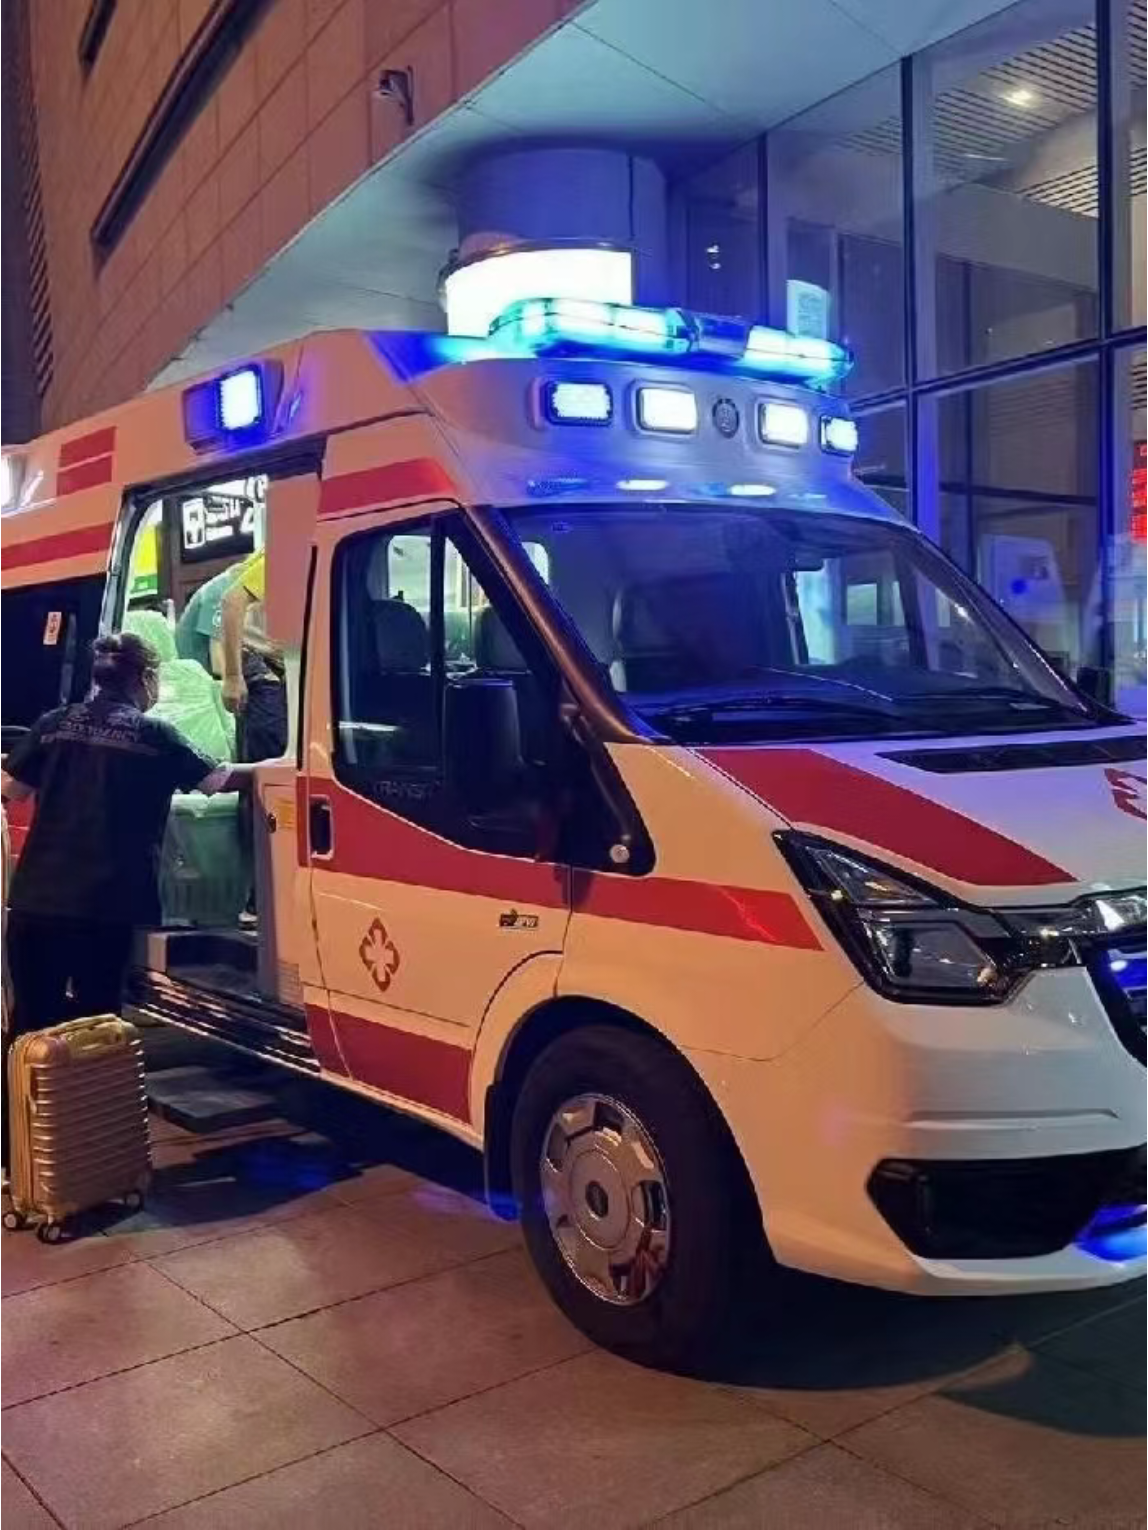 濮阳活动驻场救护车出租-设备，应对各种紧急情况,收费标准